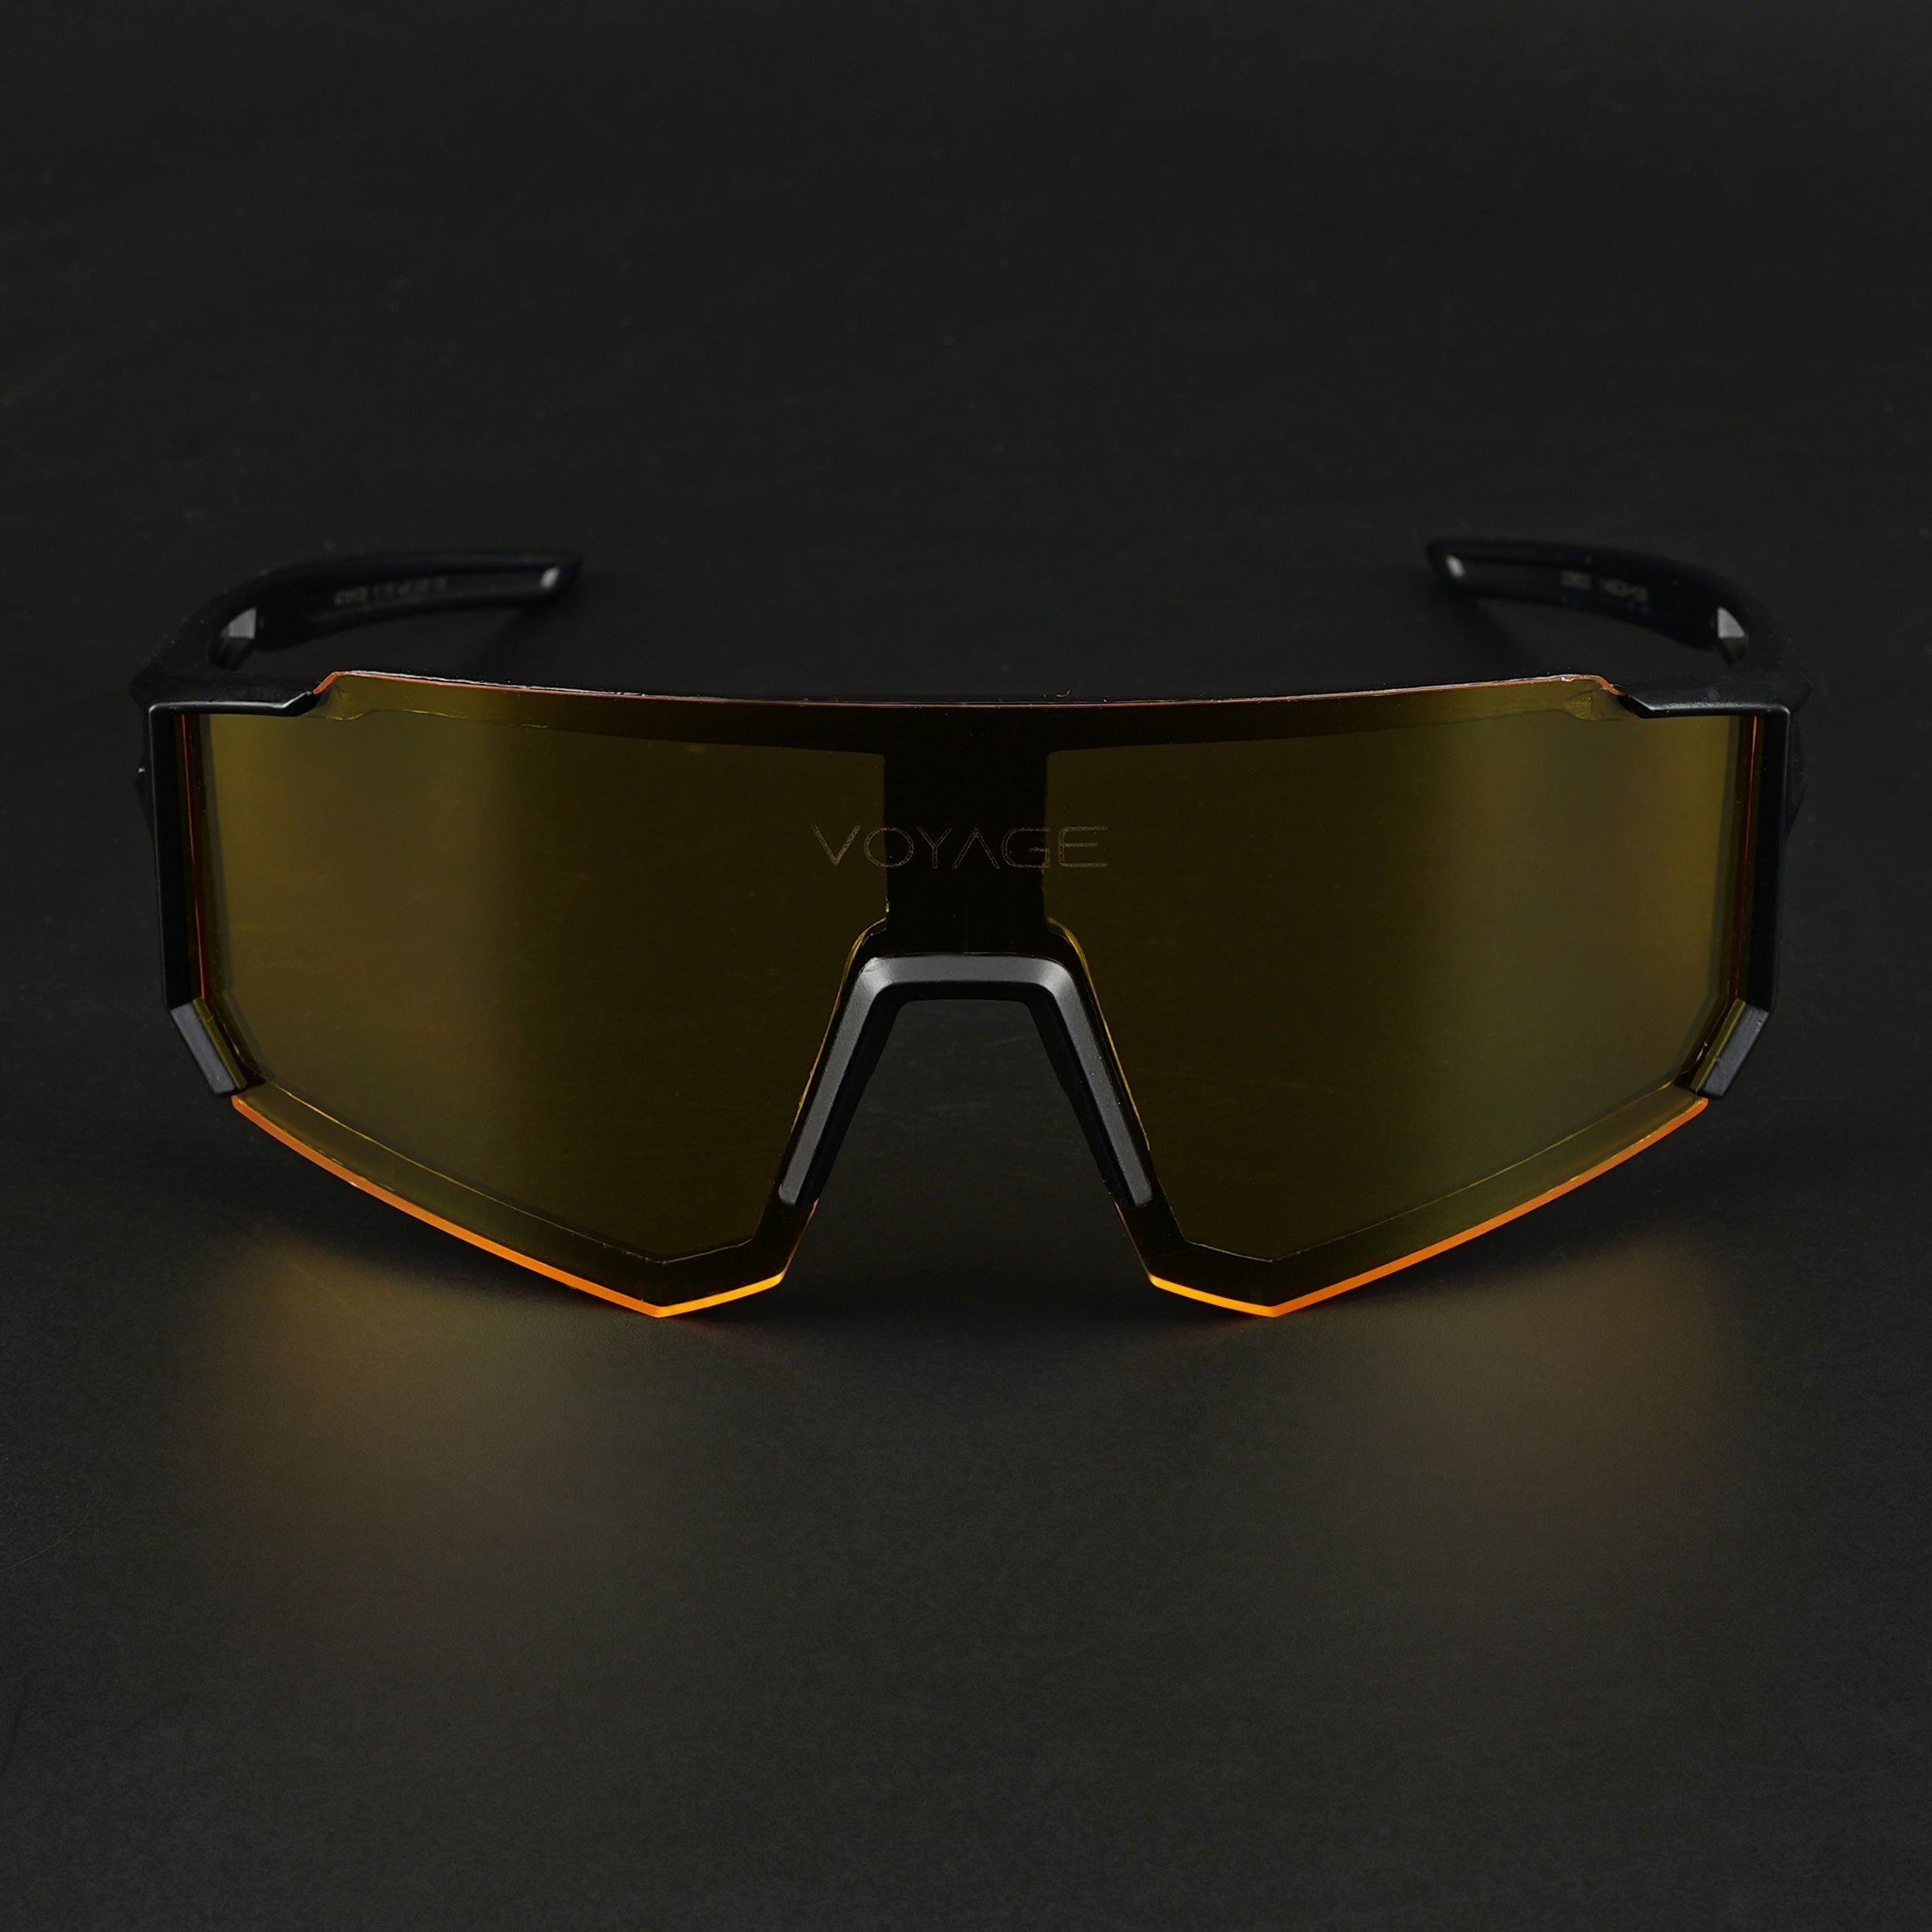 Voyage Drift Sunglasses for Men & Women (Yellow Lens | Black Frame - MG5618)